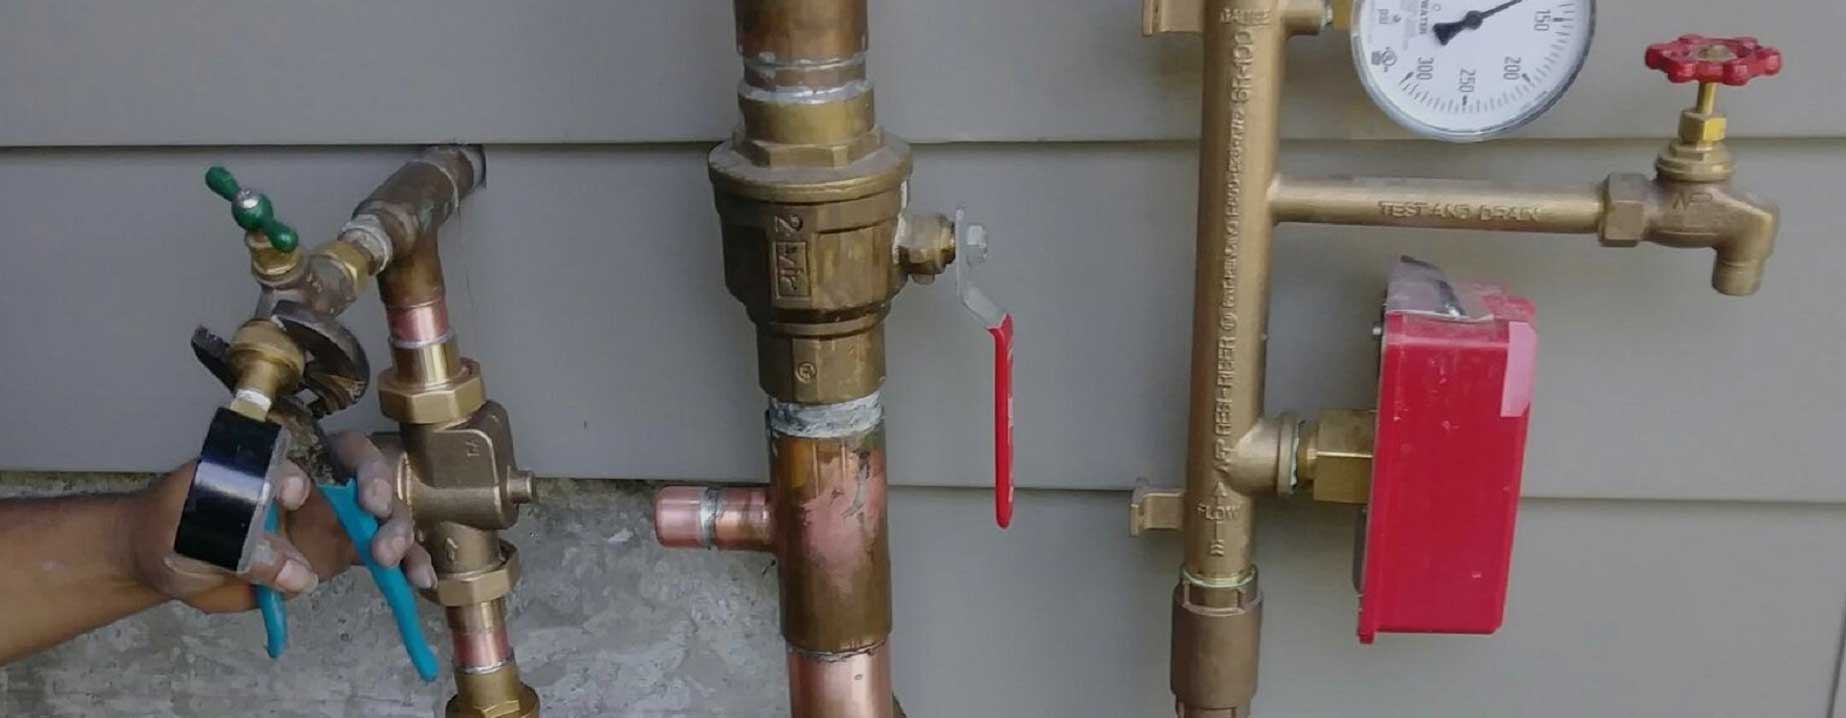 images/main-site-plumbing1.jpg